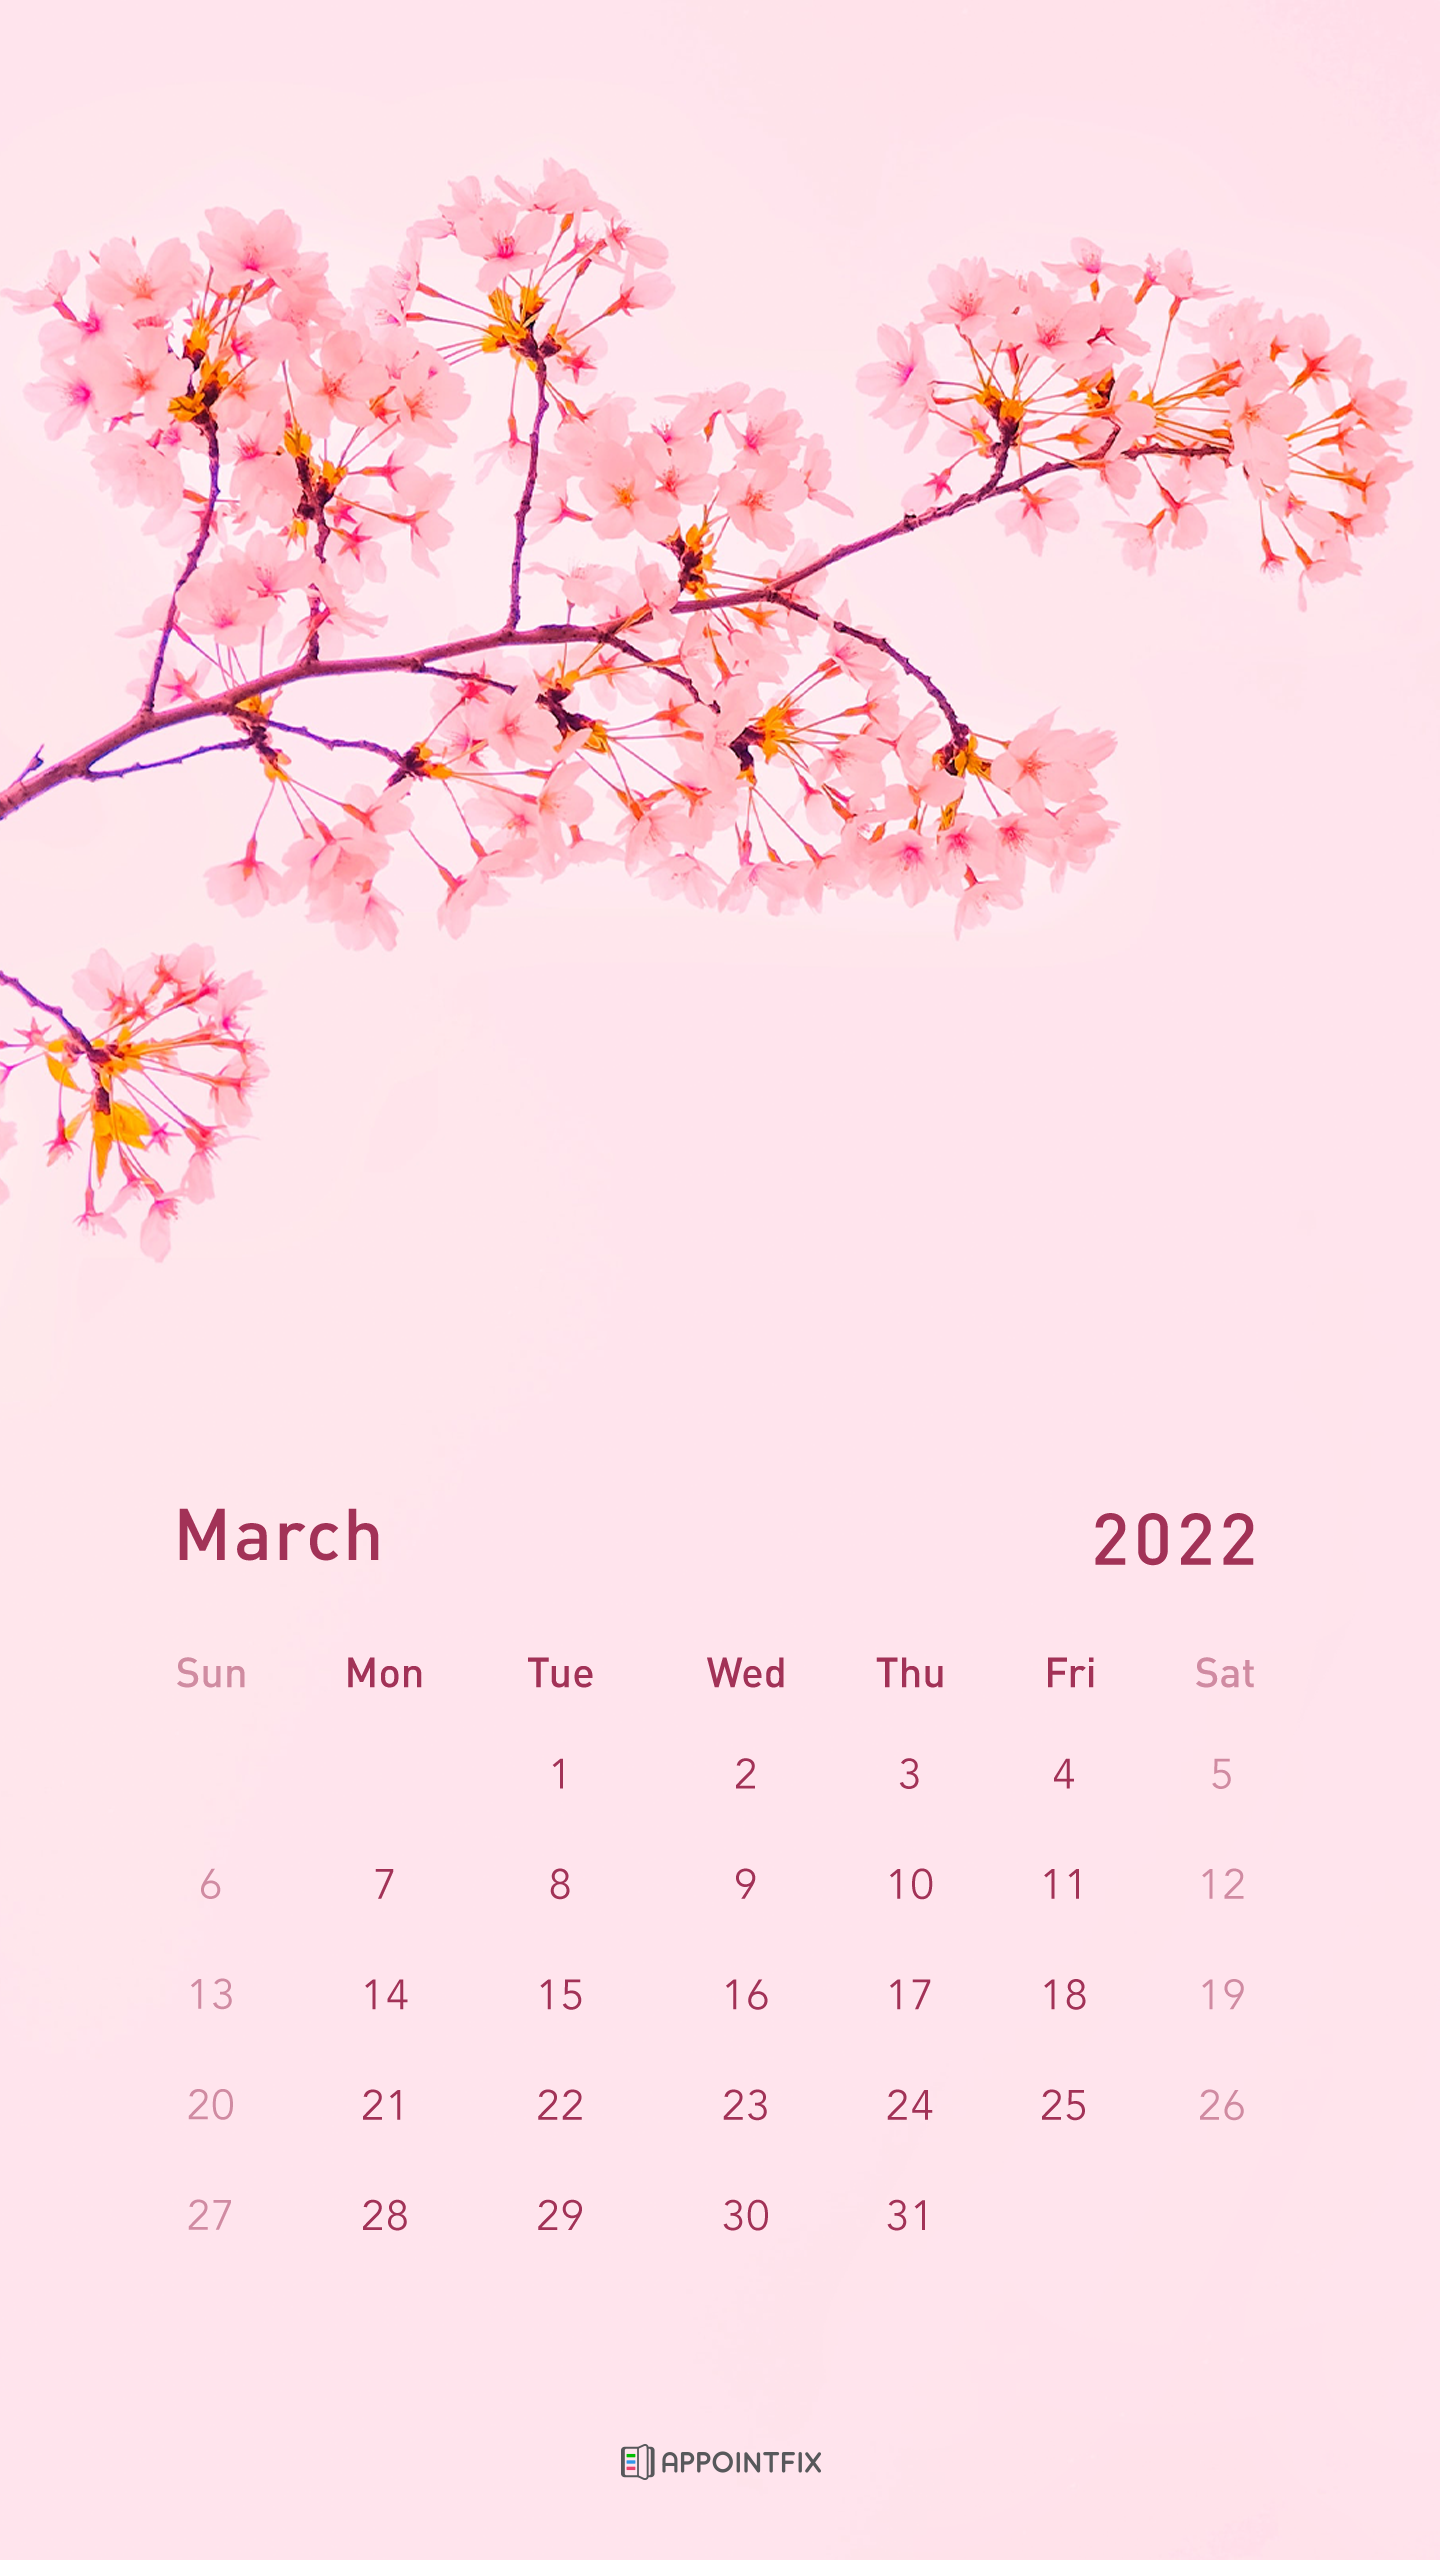 March 2022 Calendar Wallpaper March 2022 Calendar Wallpapers - Wallpaper Cave